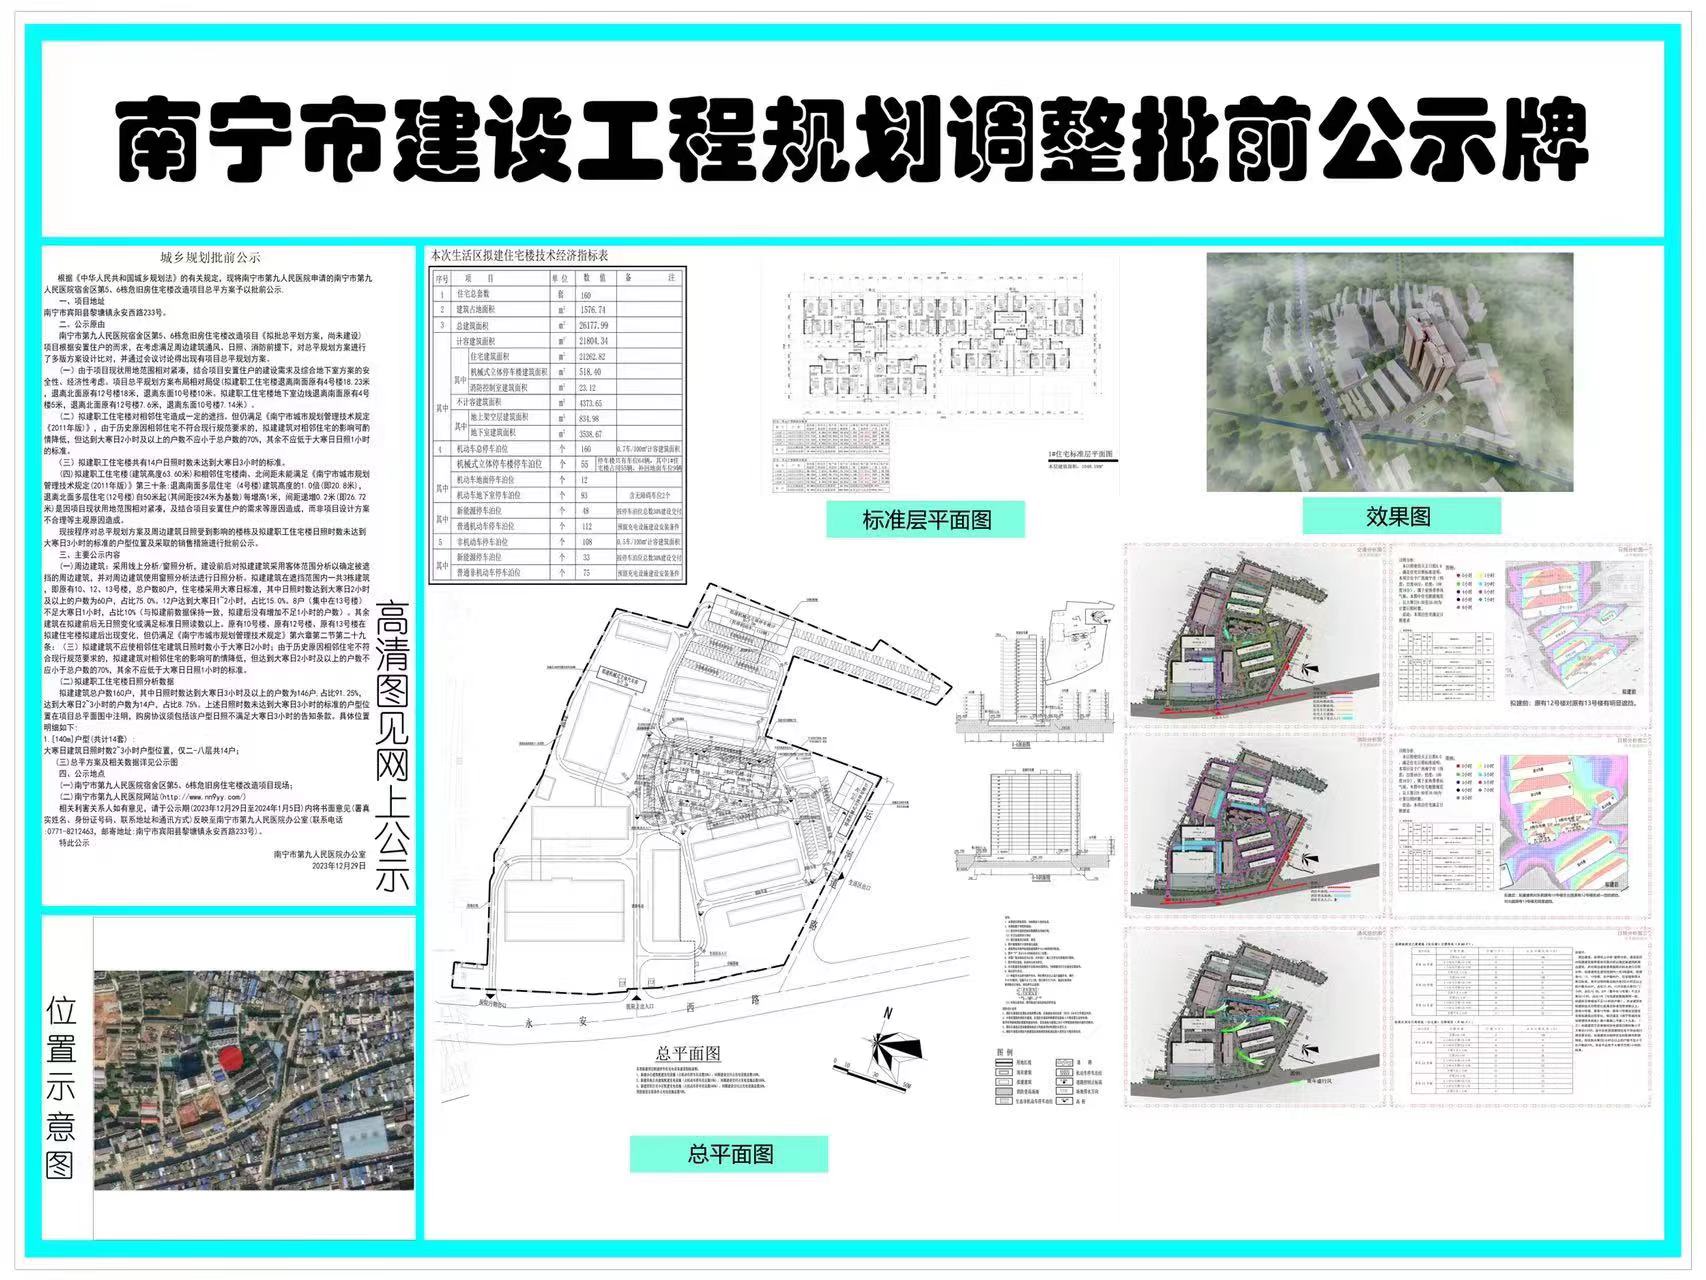 南宁市建设工程规划调整批前公示牌.jpg